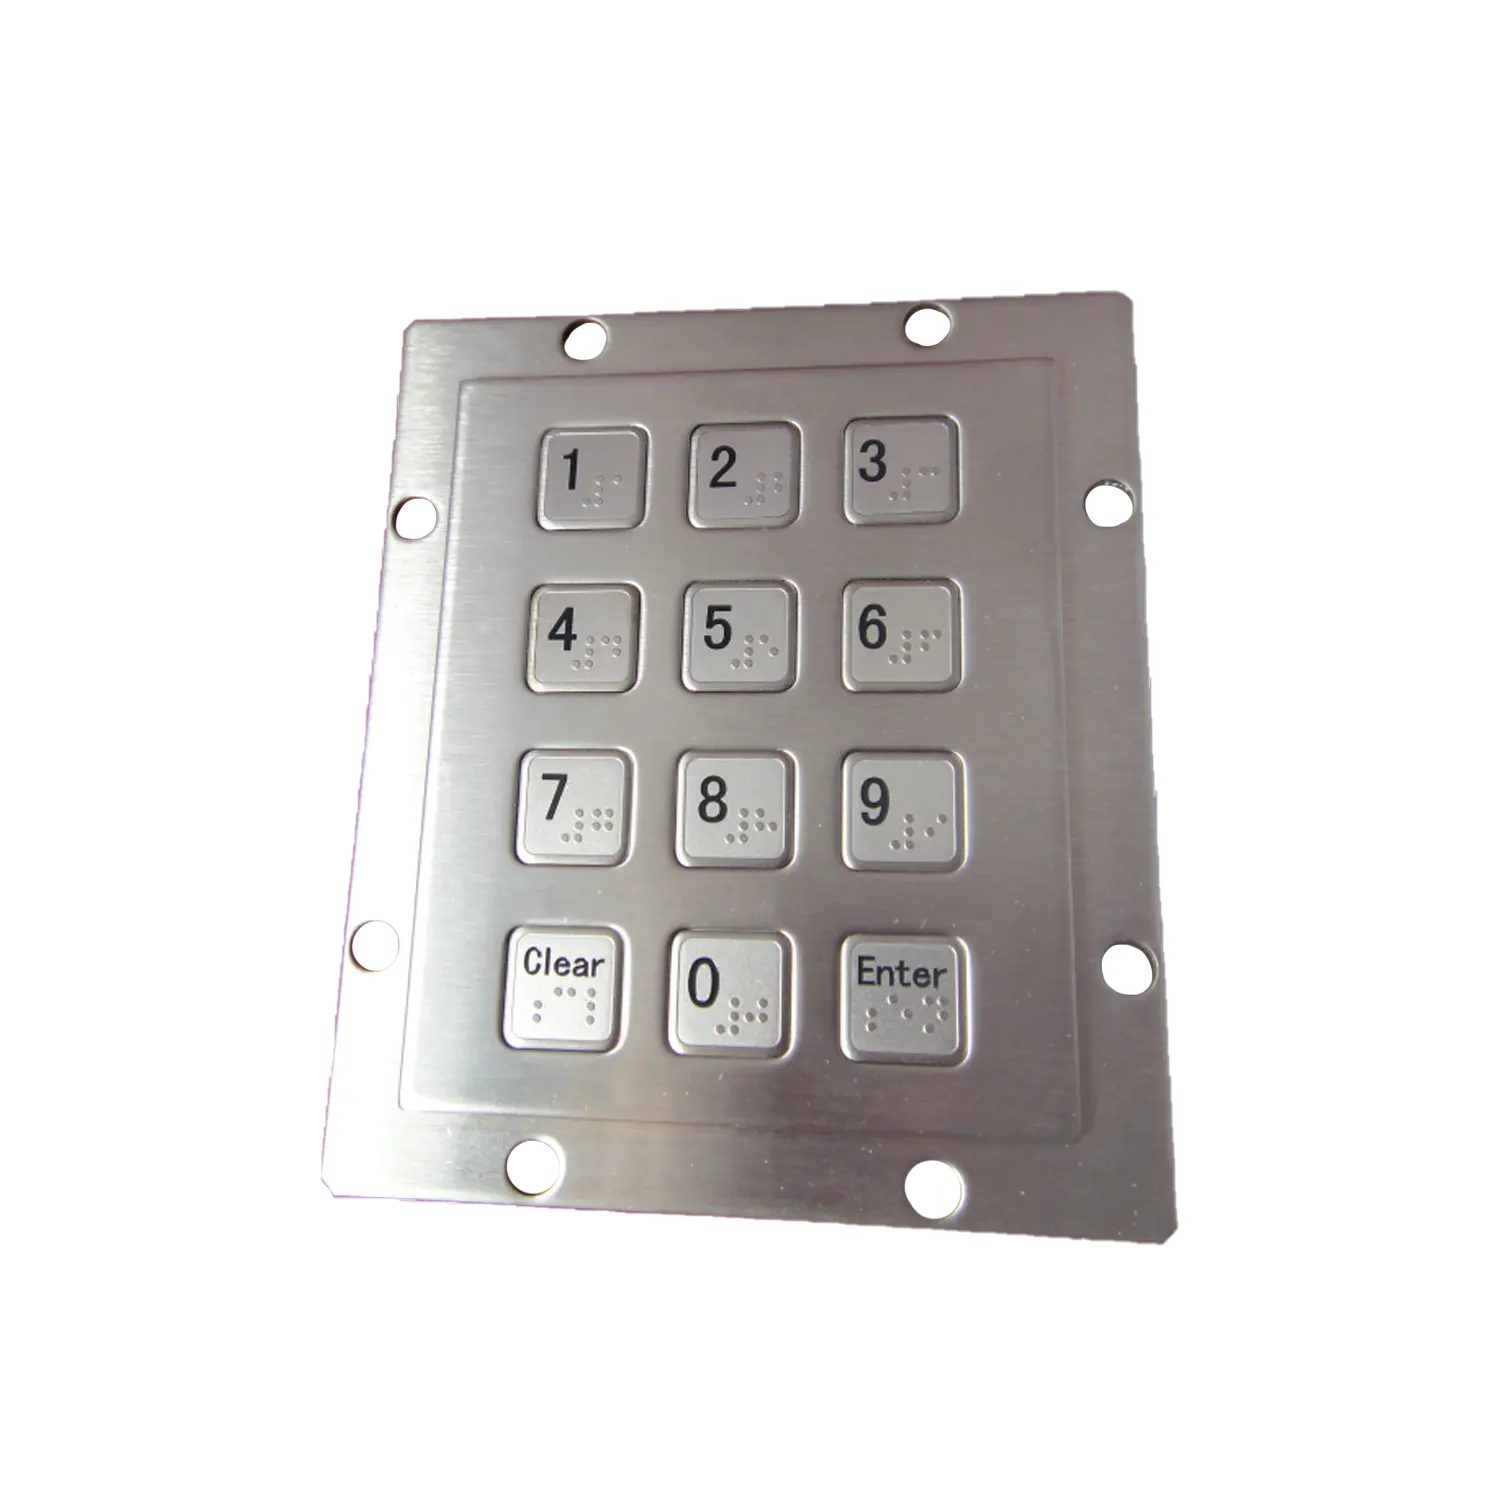 Industria inoxidable duradero 12 teclas teclado numérico de acero inoxidable teclado impermeable con puntos braille